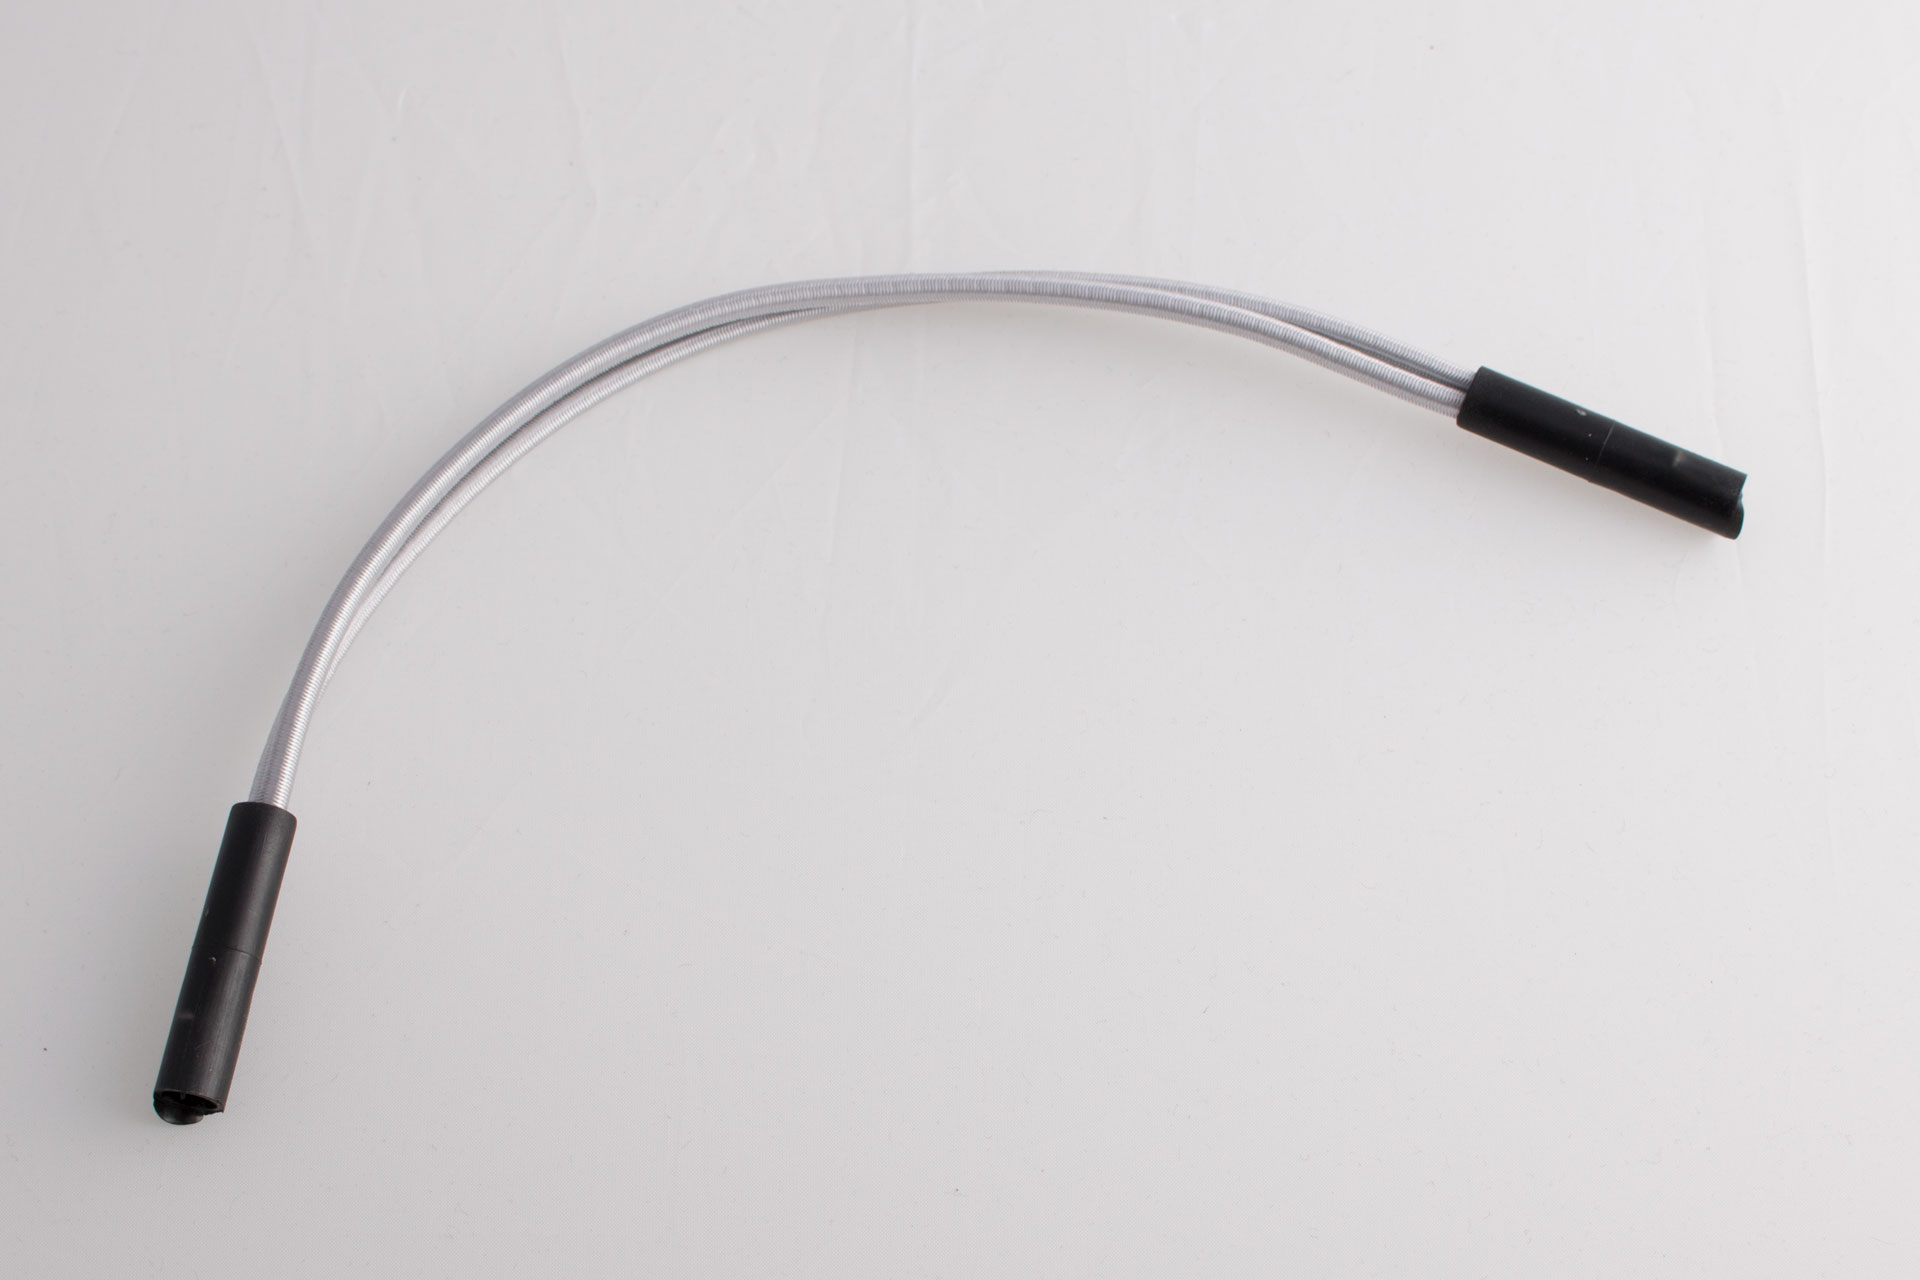 Sandow élastique blanc mm sur mesure – Spécialiste du store en ligne